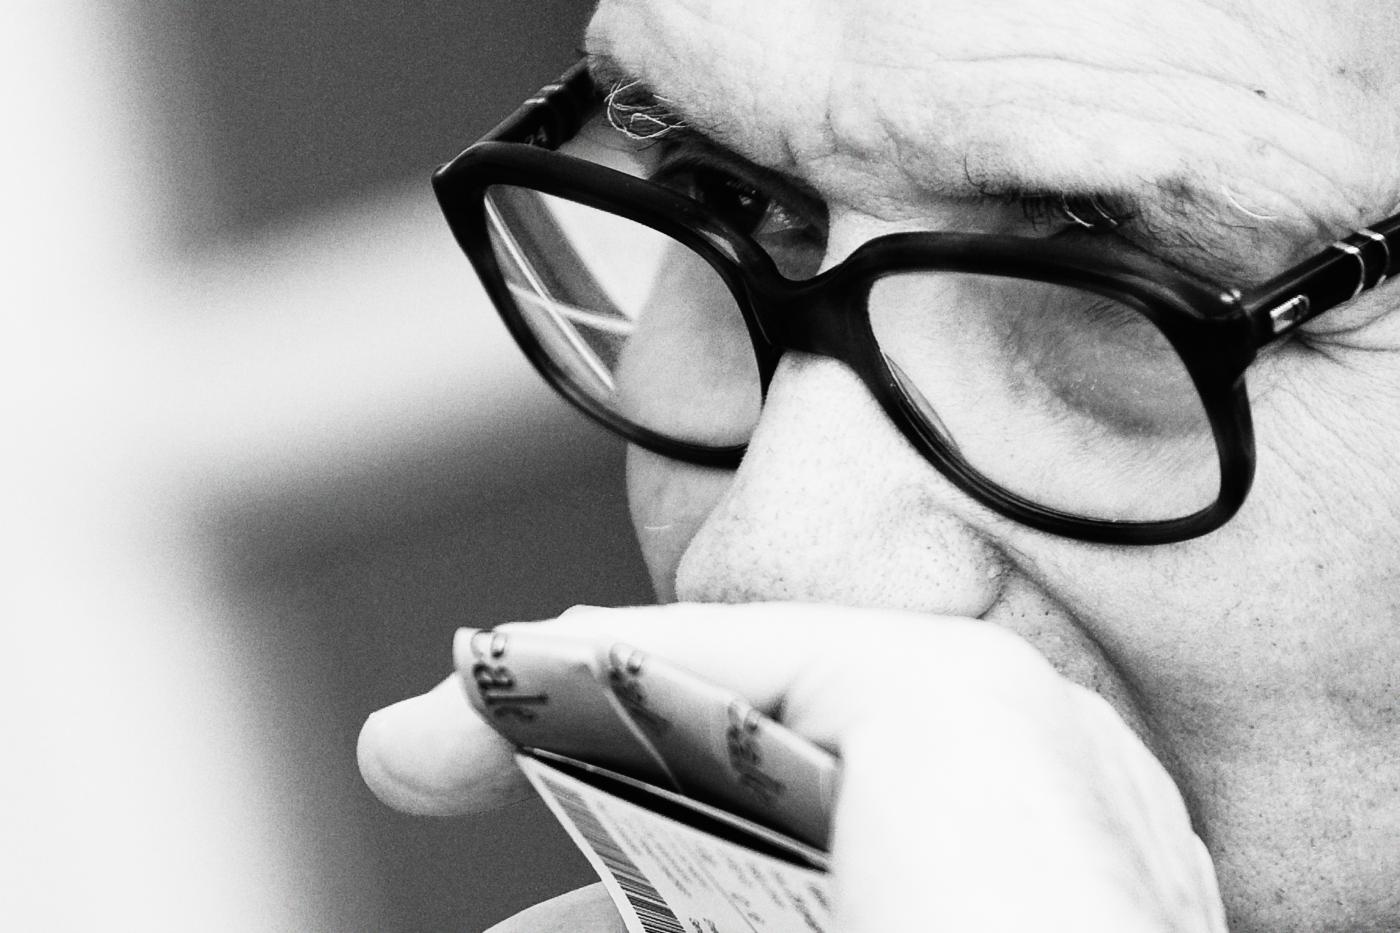 Intervista ad Ennio Morricone: “Non sono abituato a pensare al futuro”